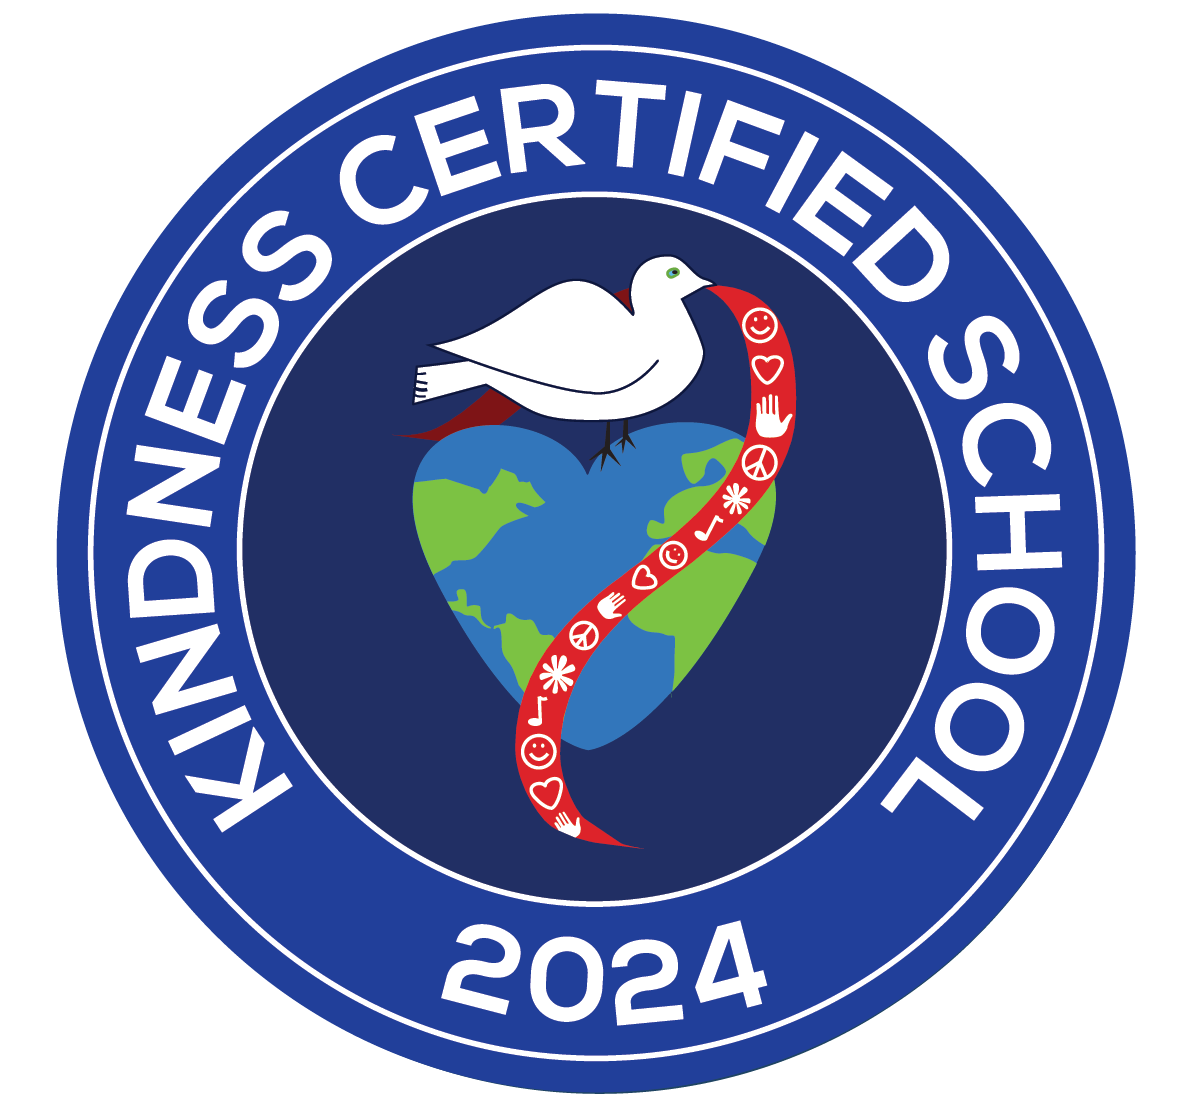 Kindness Certified School 2024 Seal